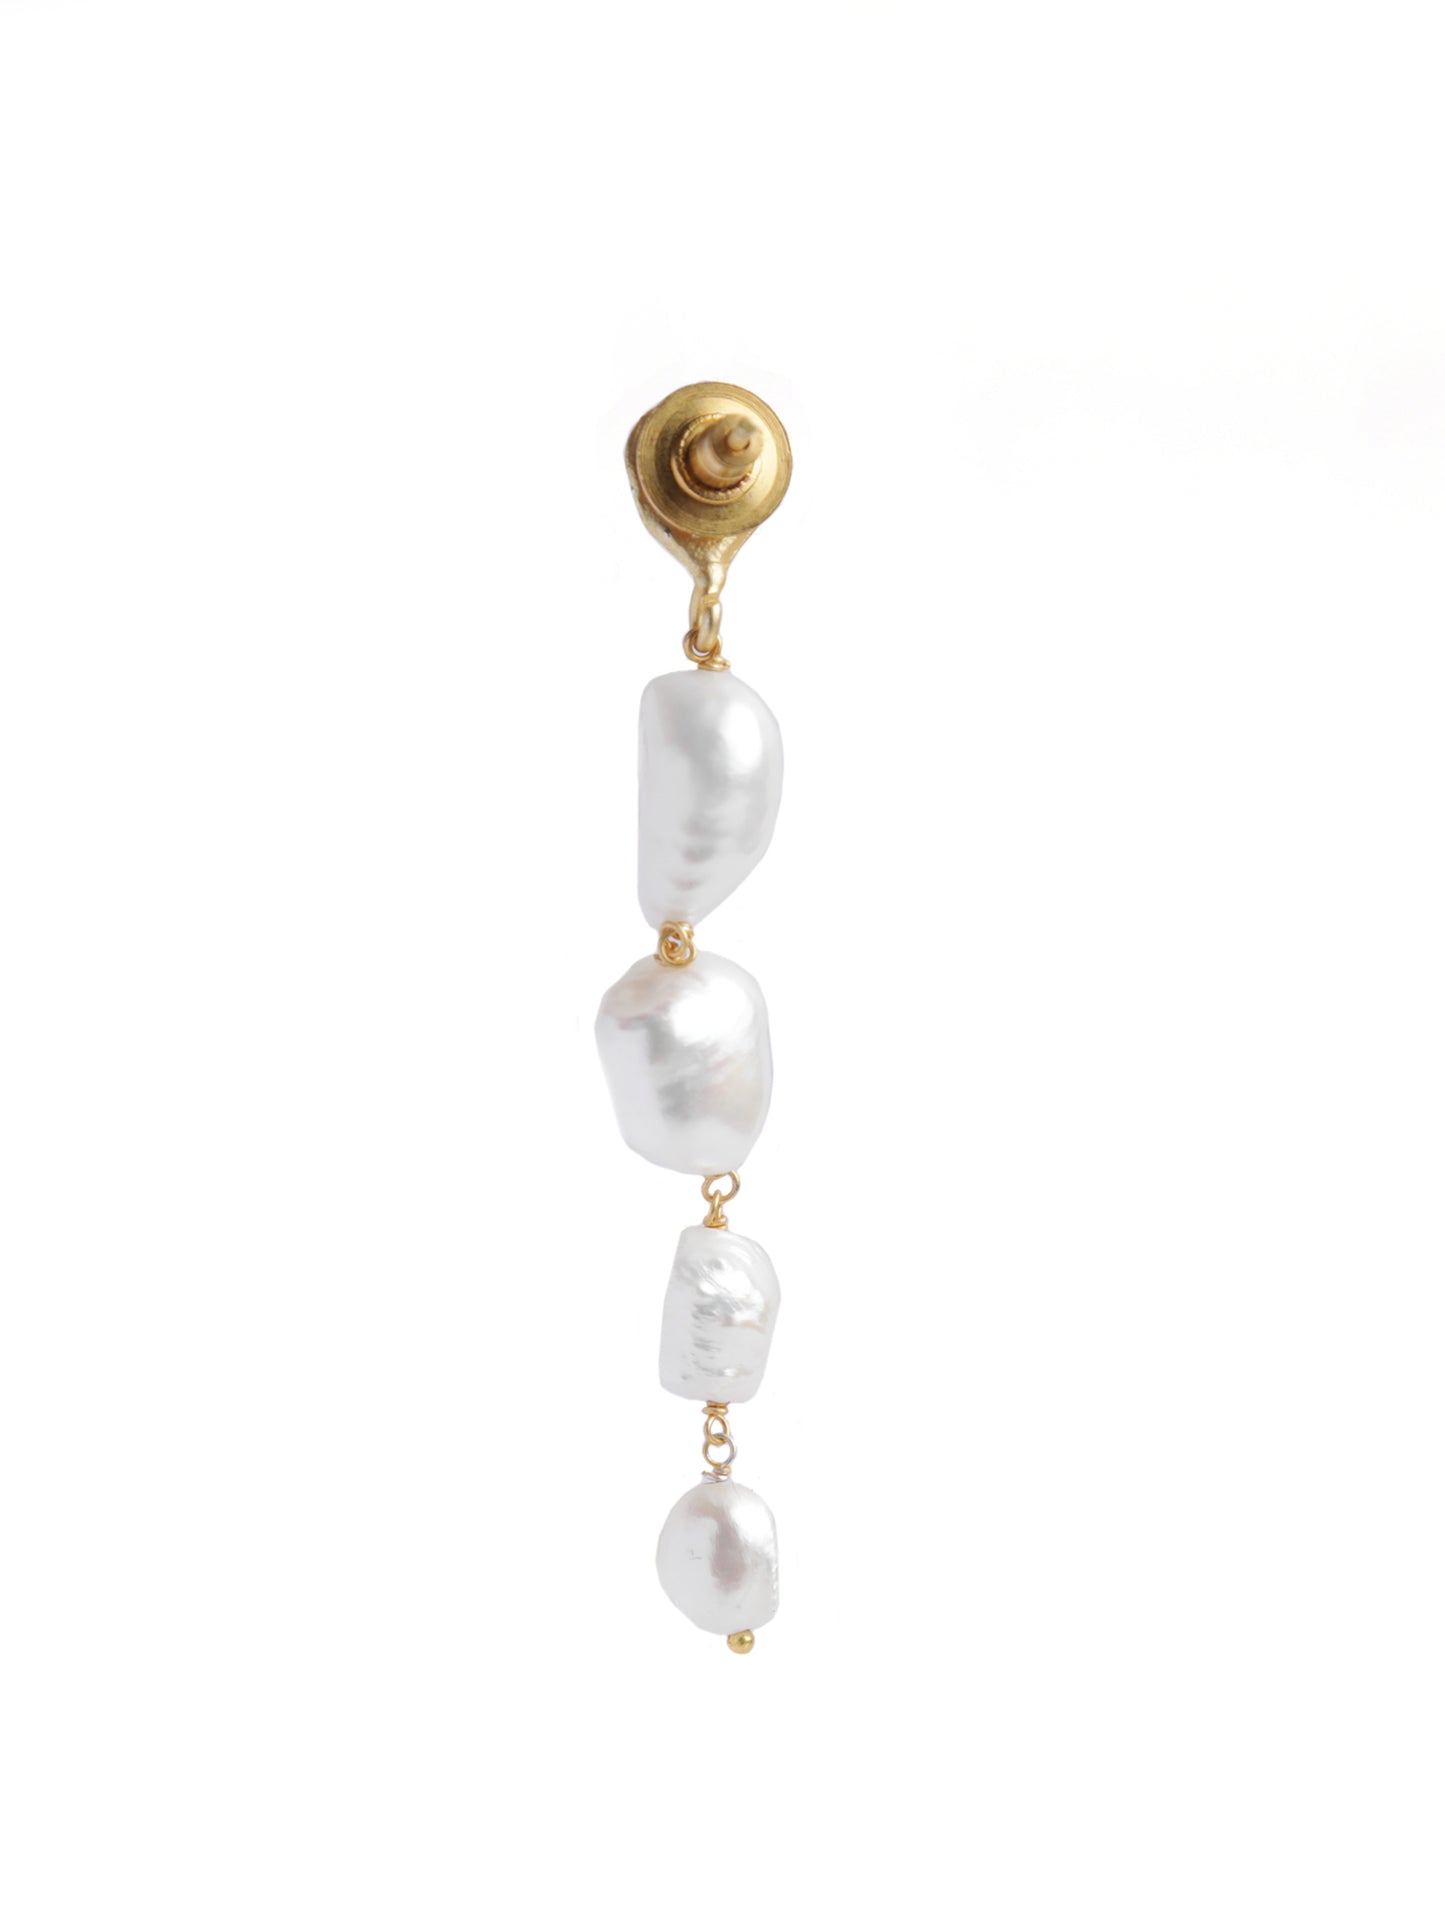 The Golden-White Malti Earrings